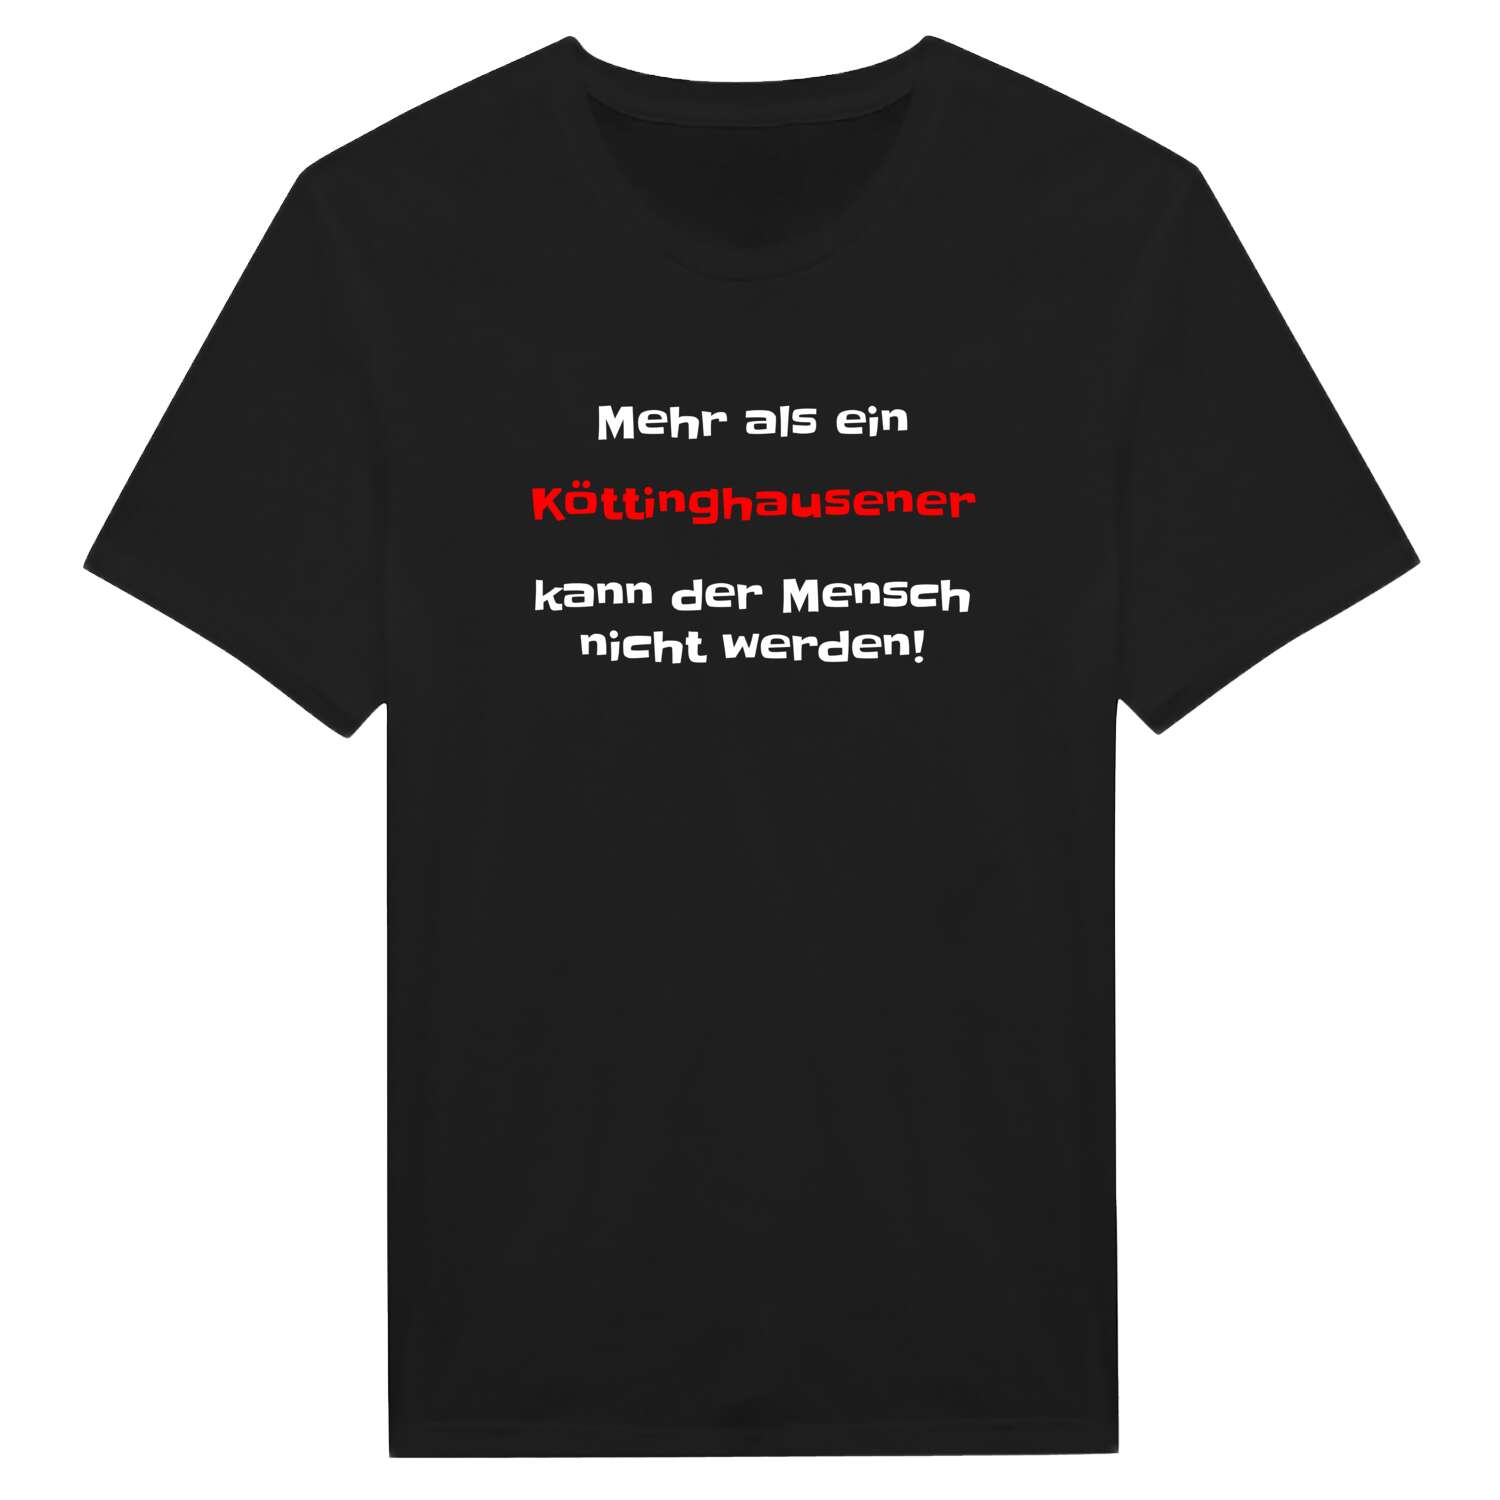 Köttinghausen T-Shirt »Mehr als ein«